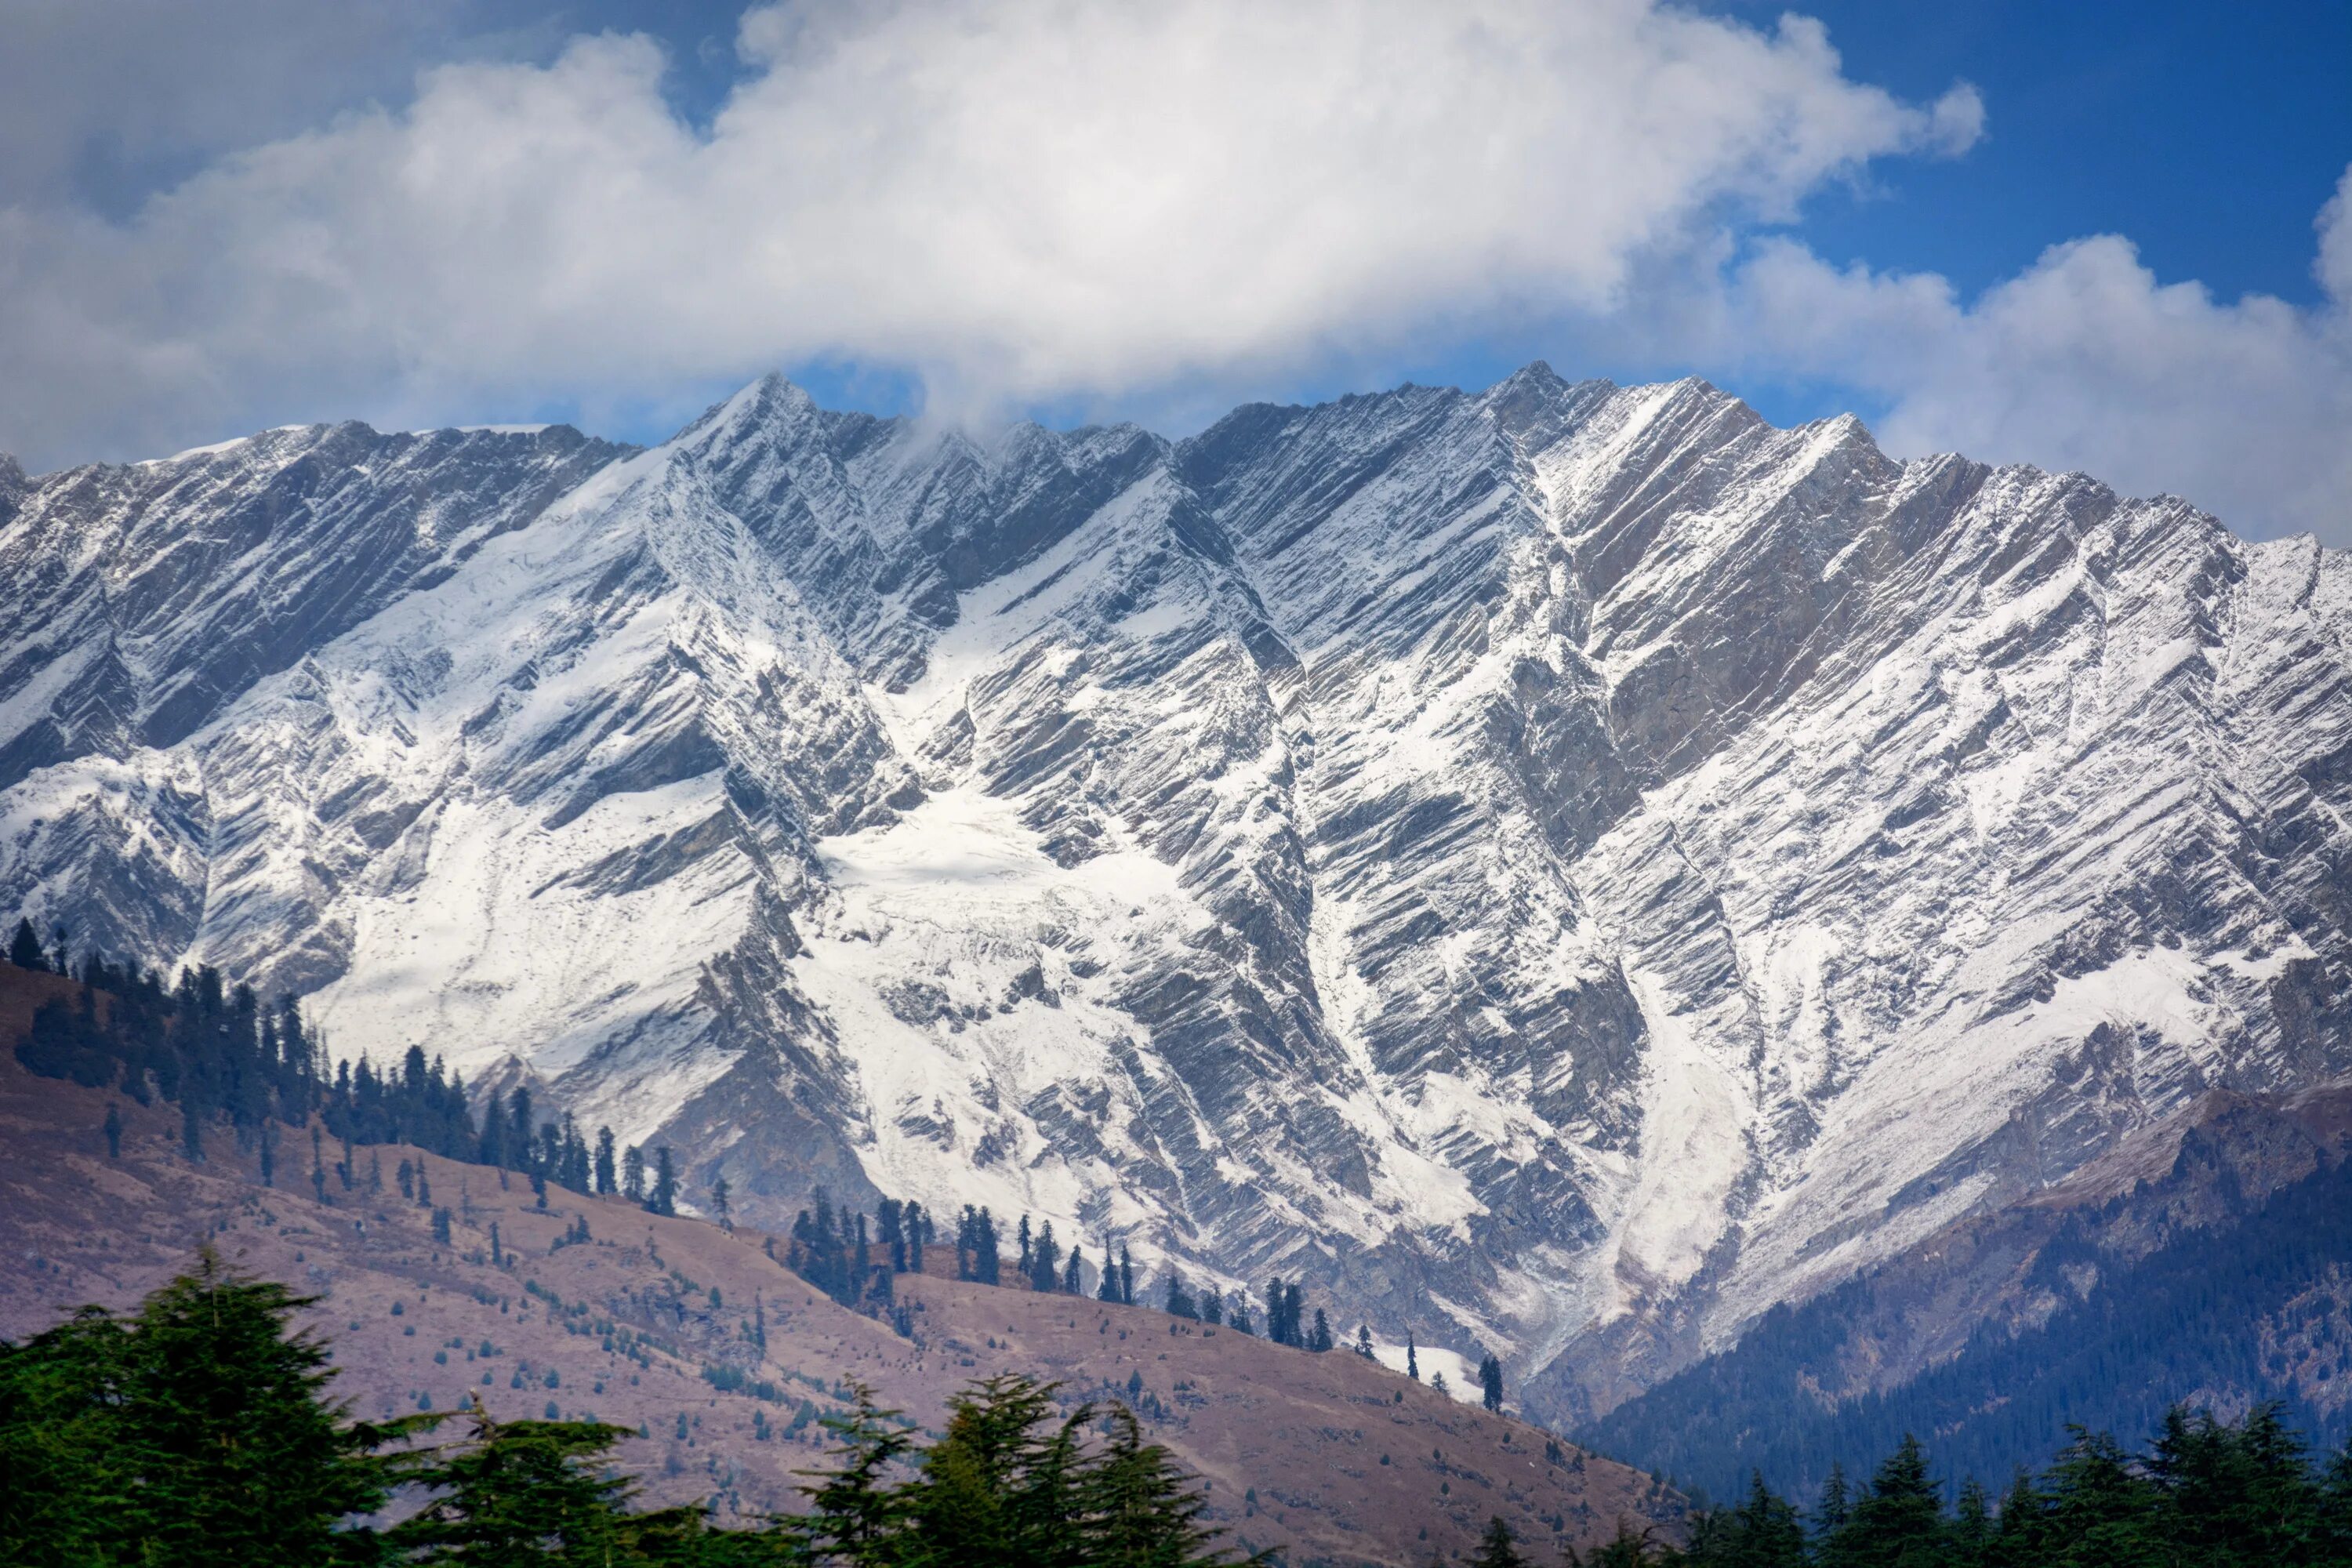 Манали Гималаи Индия. Горы Гималаи. Горный хребет Гималаи. Горная цепь Гималаи. Везде работа на горах в долинах рощах